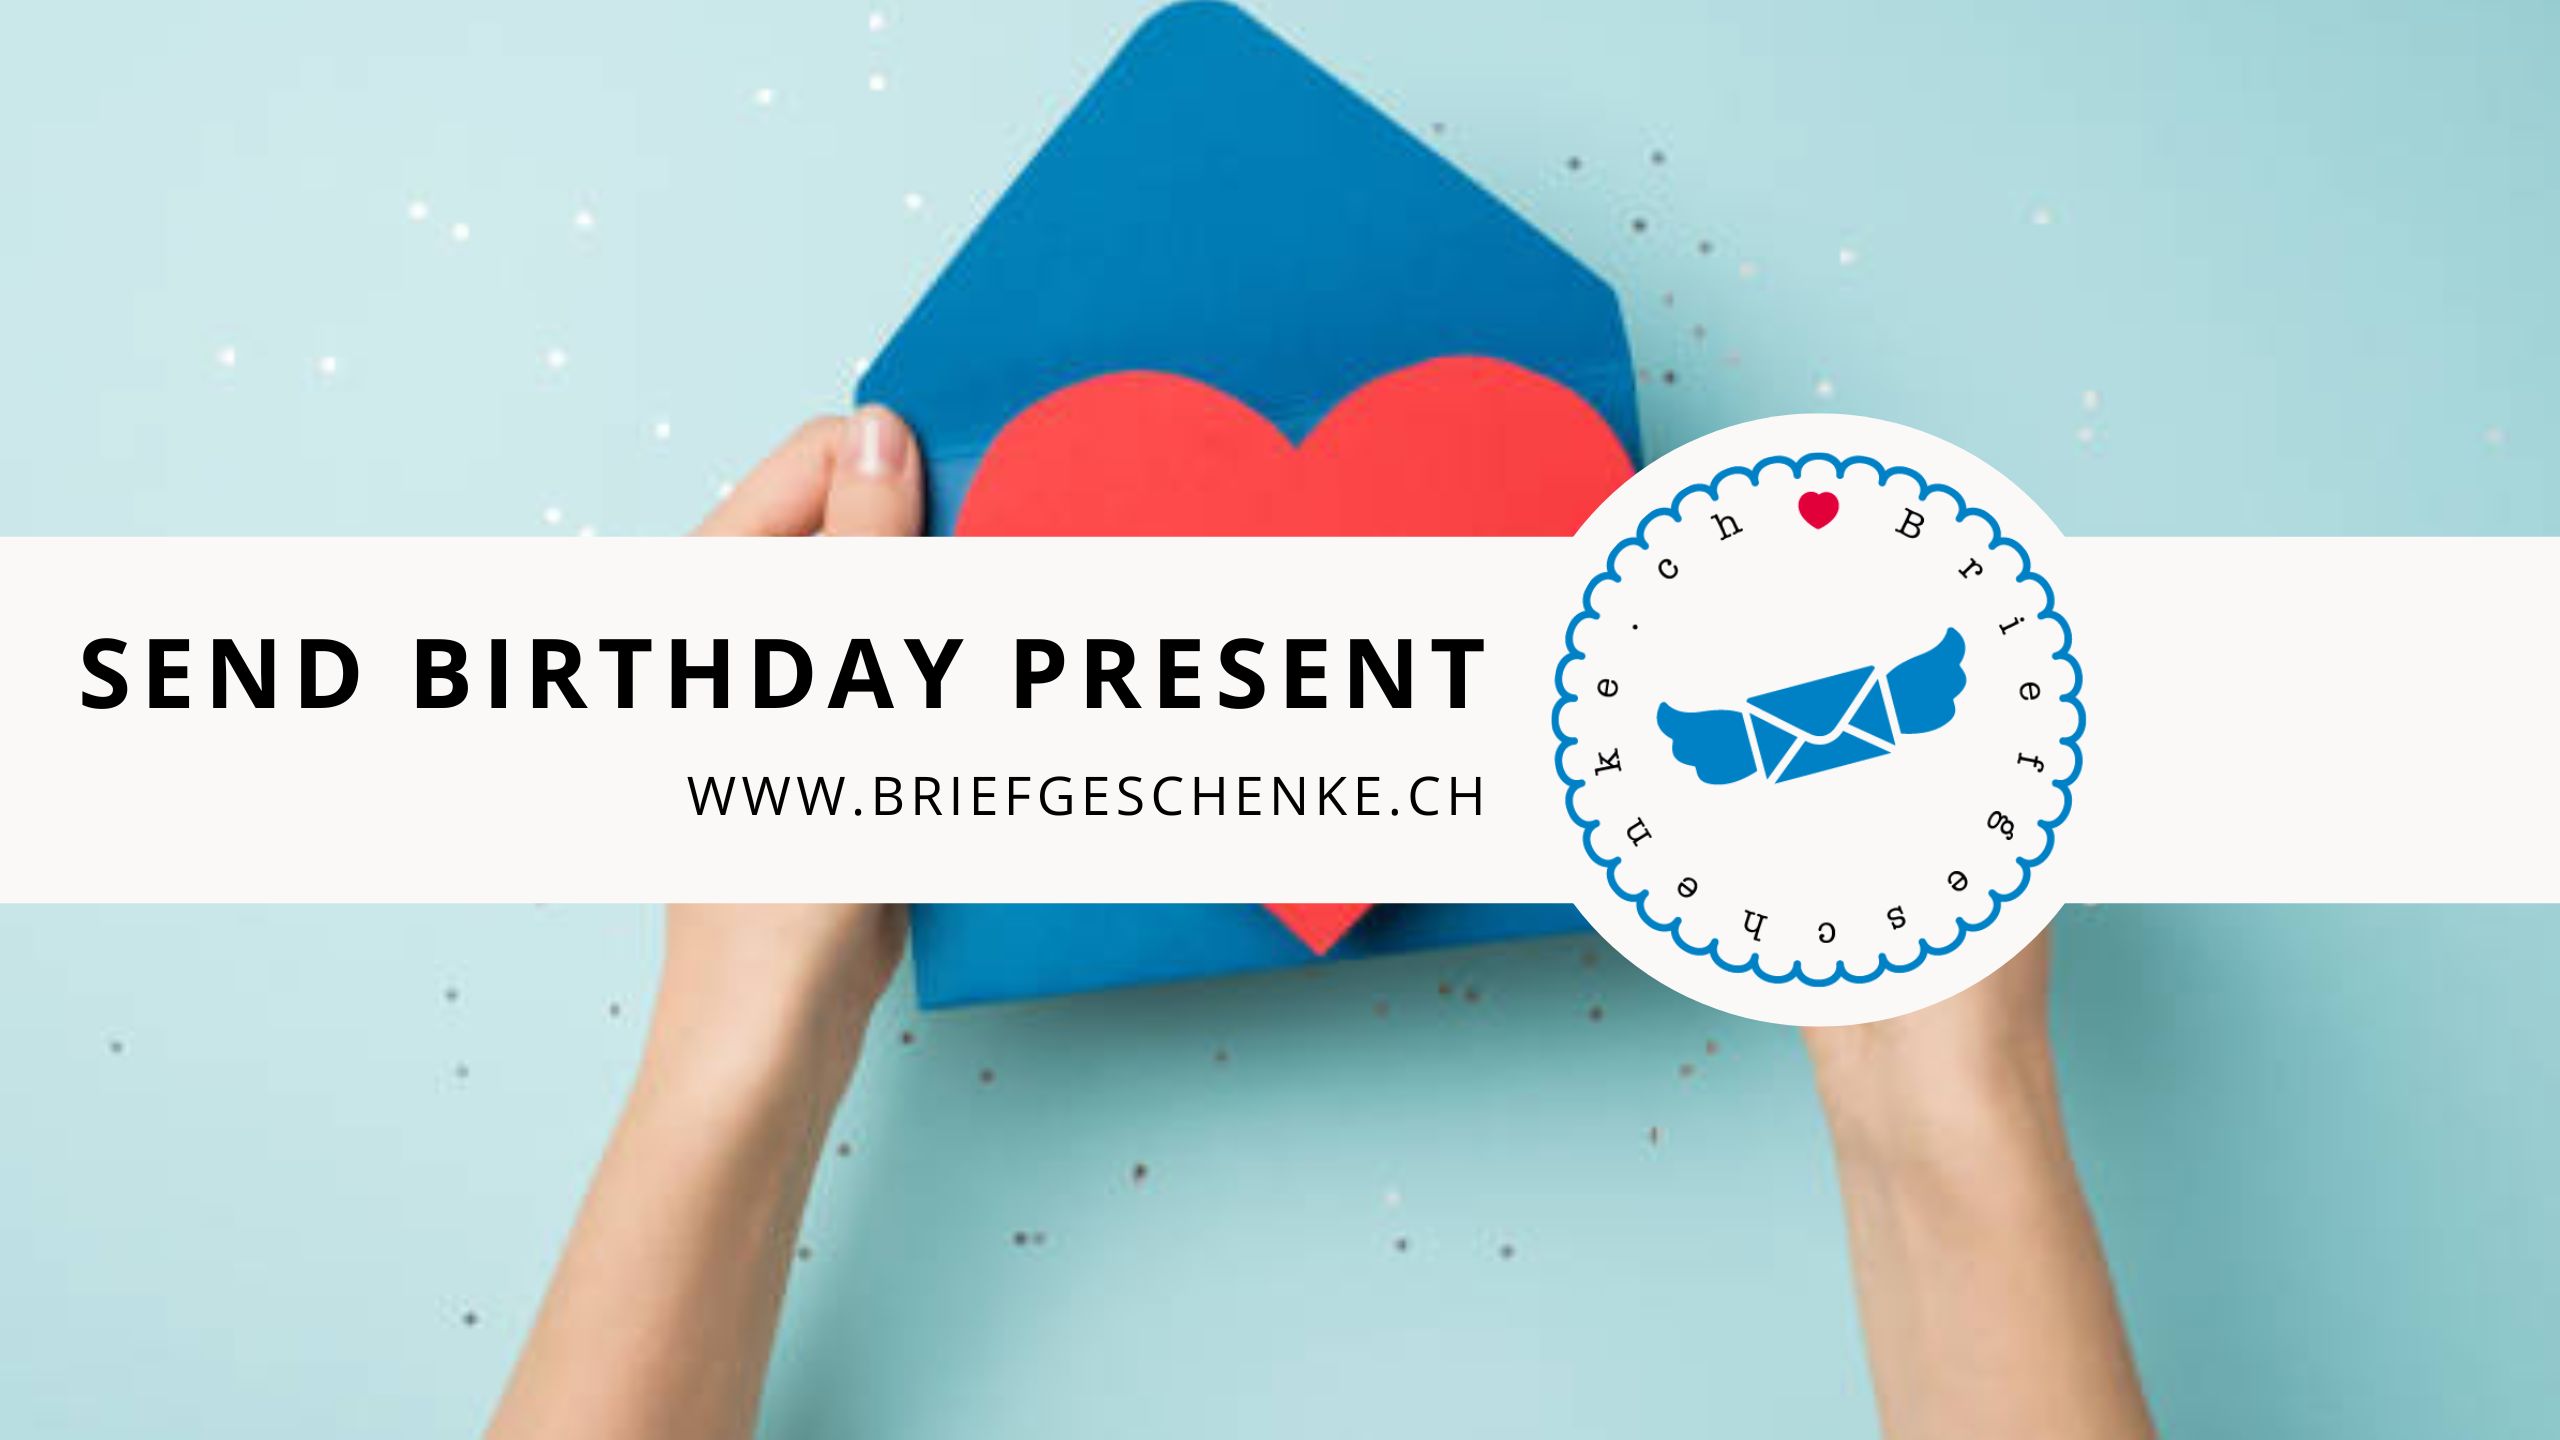 Send Birthday Present | Send a Birthday Surprise - Briefgeschenke